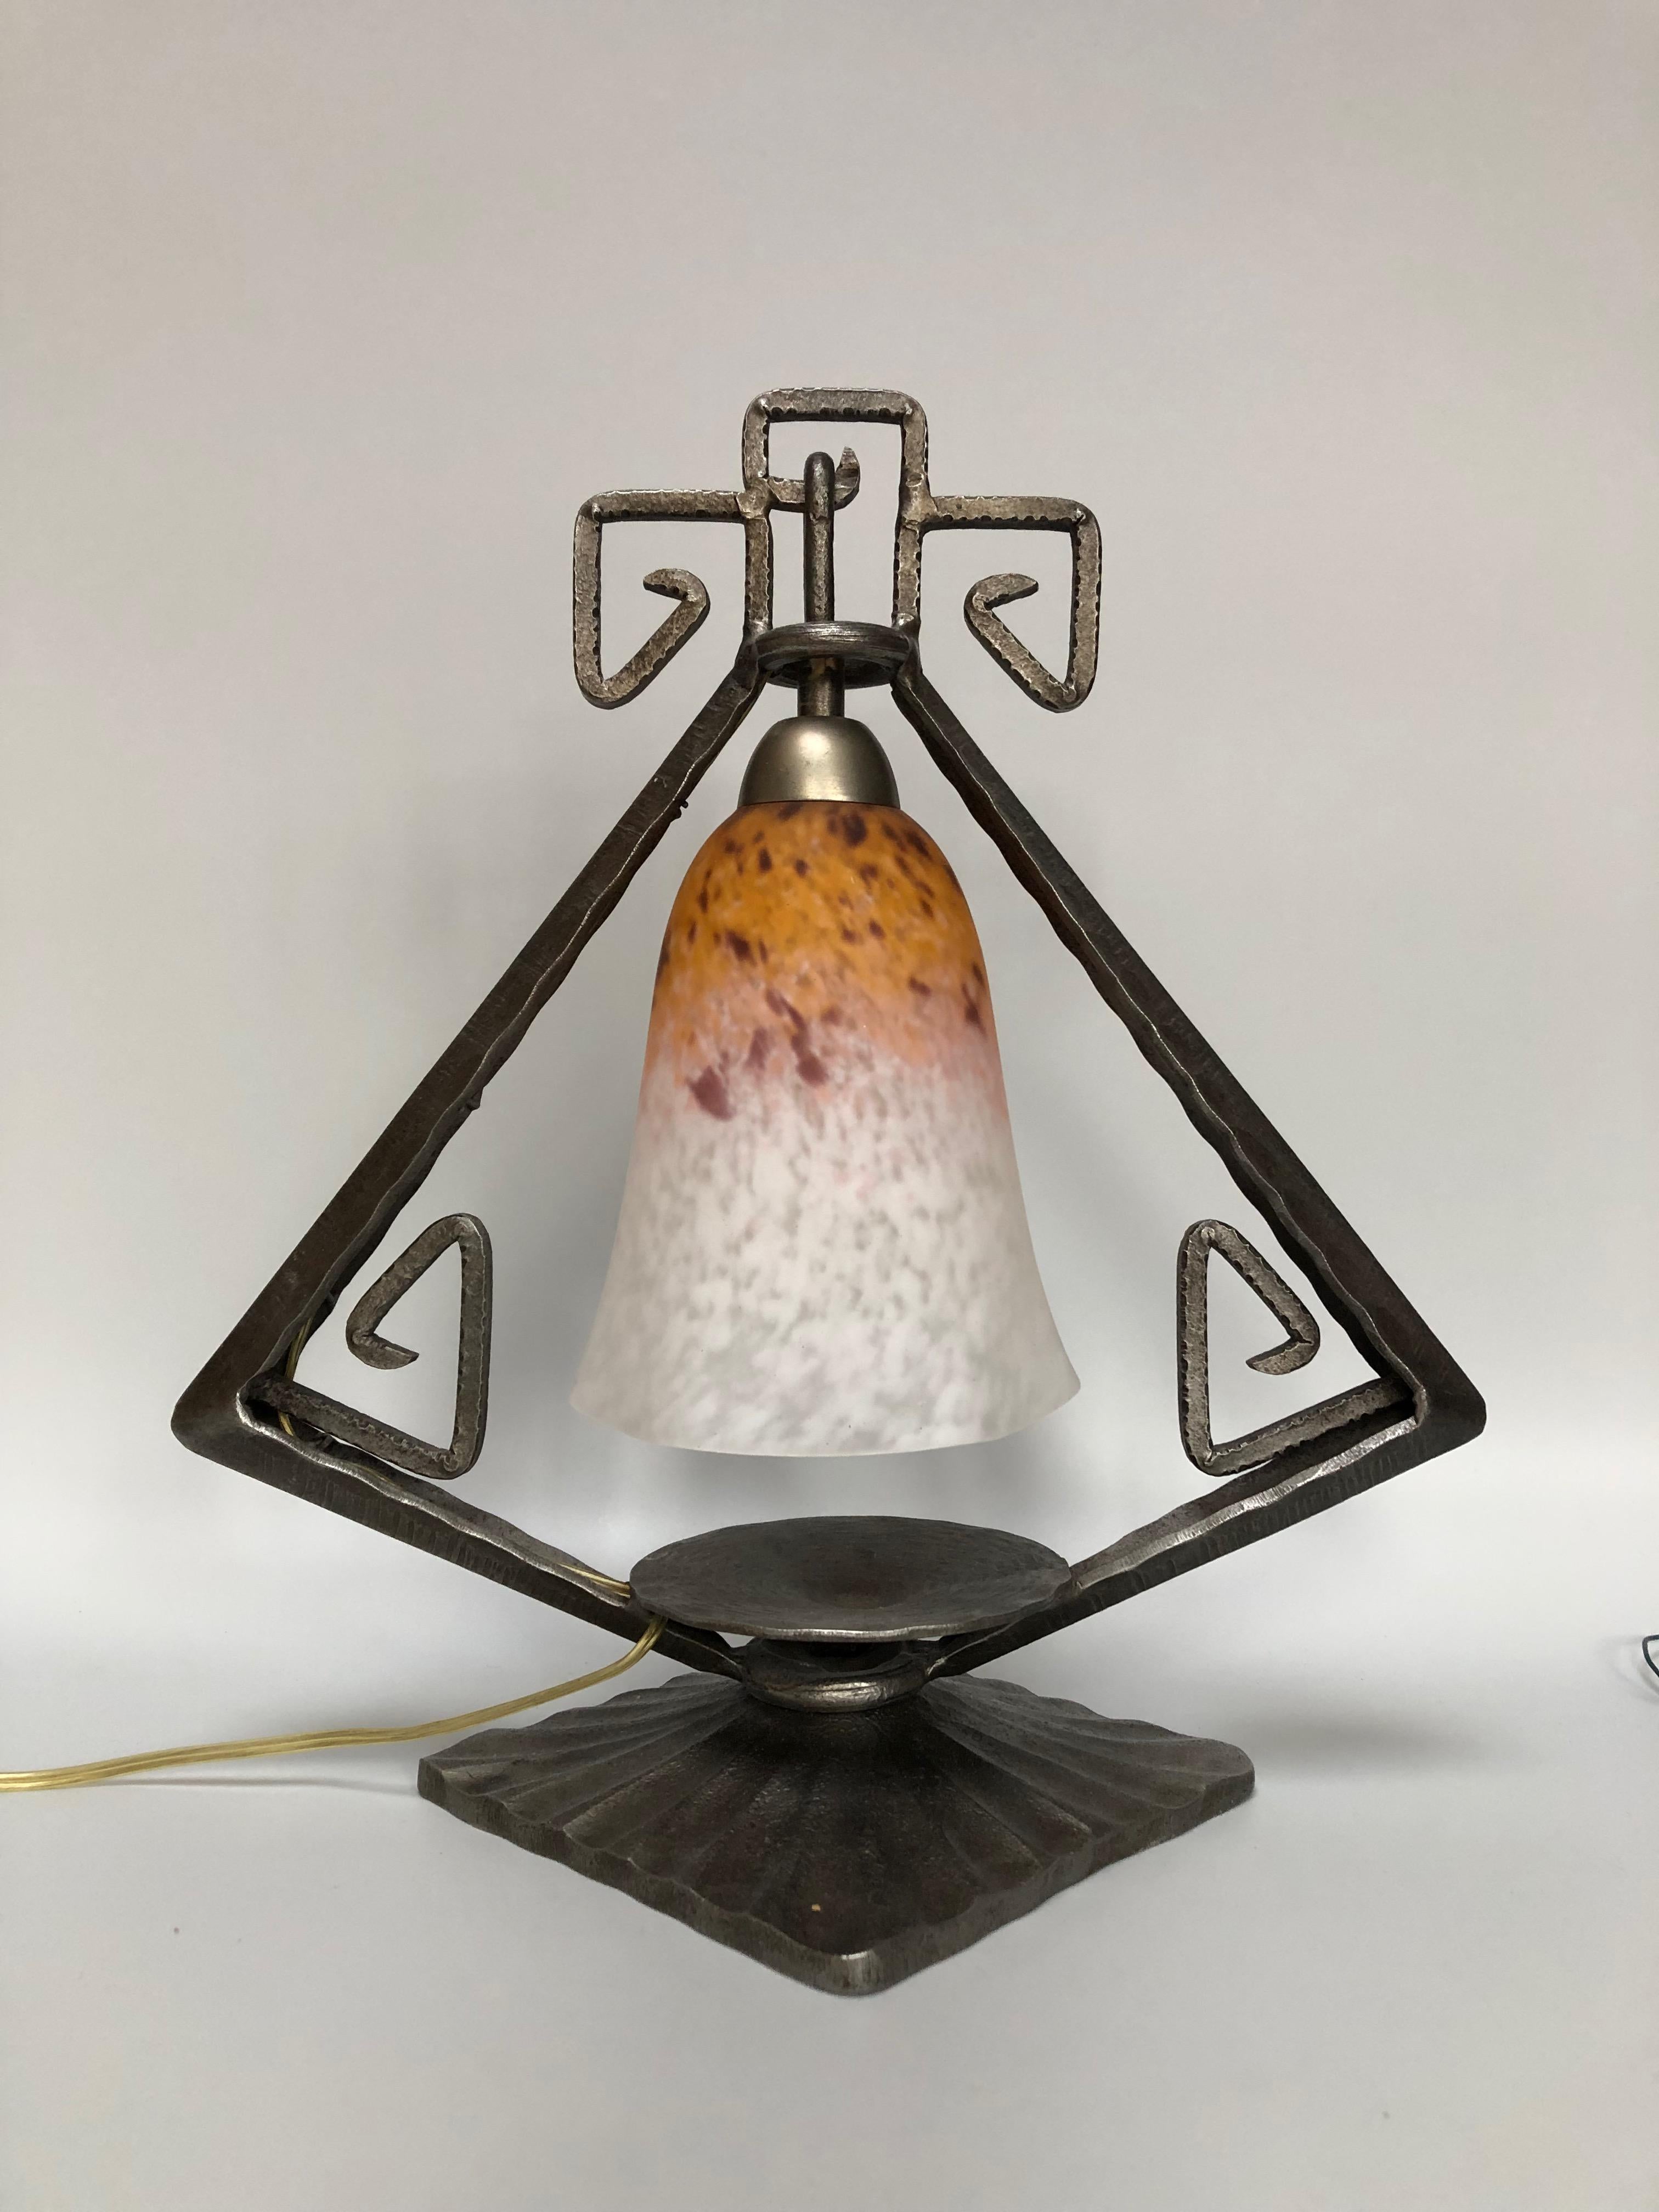 Art-déco-Lampe um 1930. 
Fuß aus Schmiedeeisen, der Fag (Marcel Vasseur) zugeschrieben wird. 
Tulpe in Glaspaste signiert Schneider. 
Elektrifiziert und in perfektem Zustand.
Höhe: 31,5 cm
Breite: 30 cm
Tiefe : 18 cm 
Gewicht : 2,5